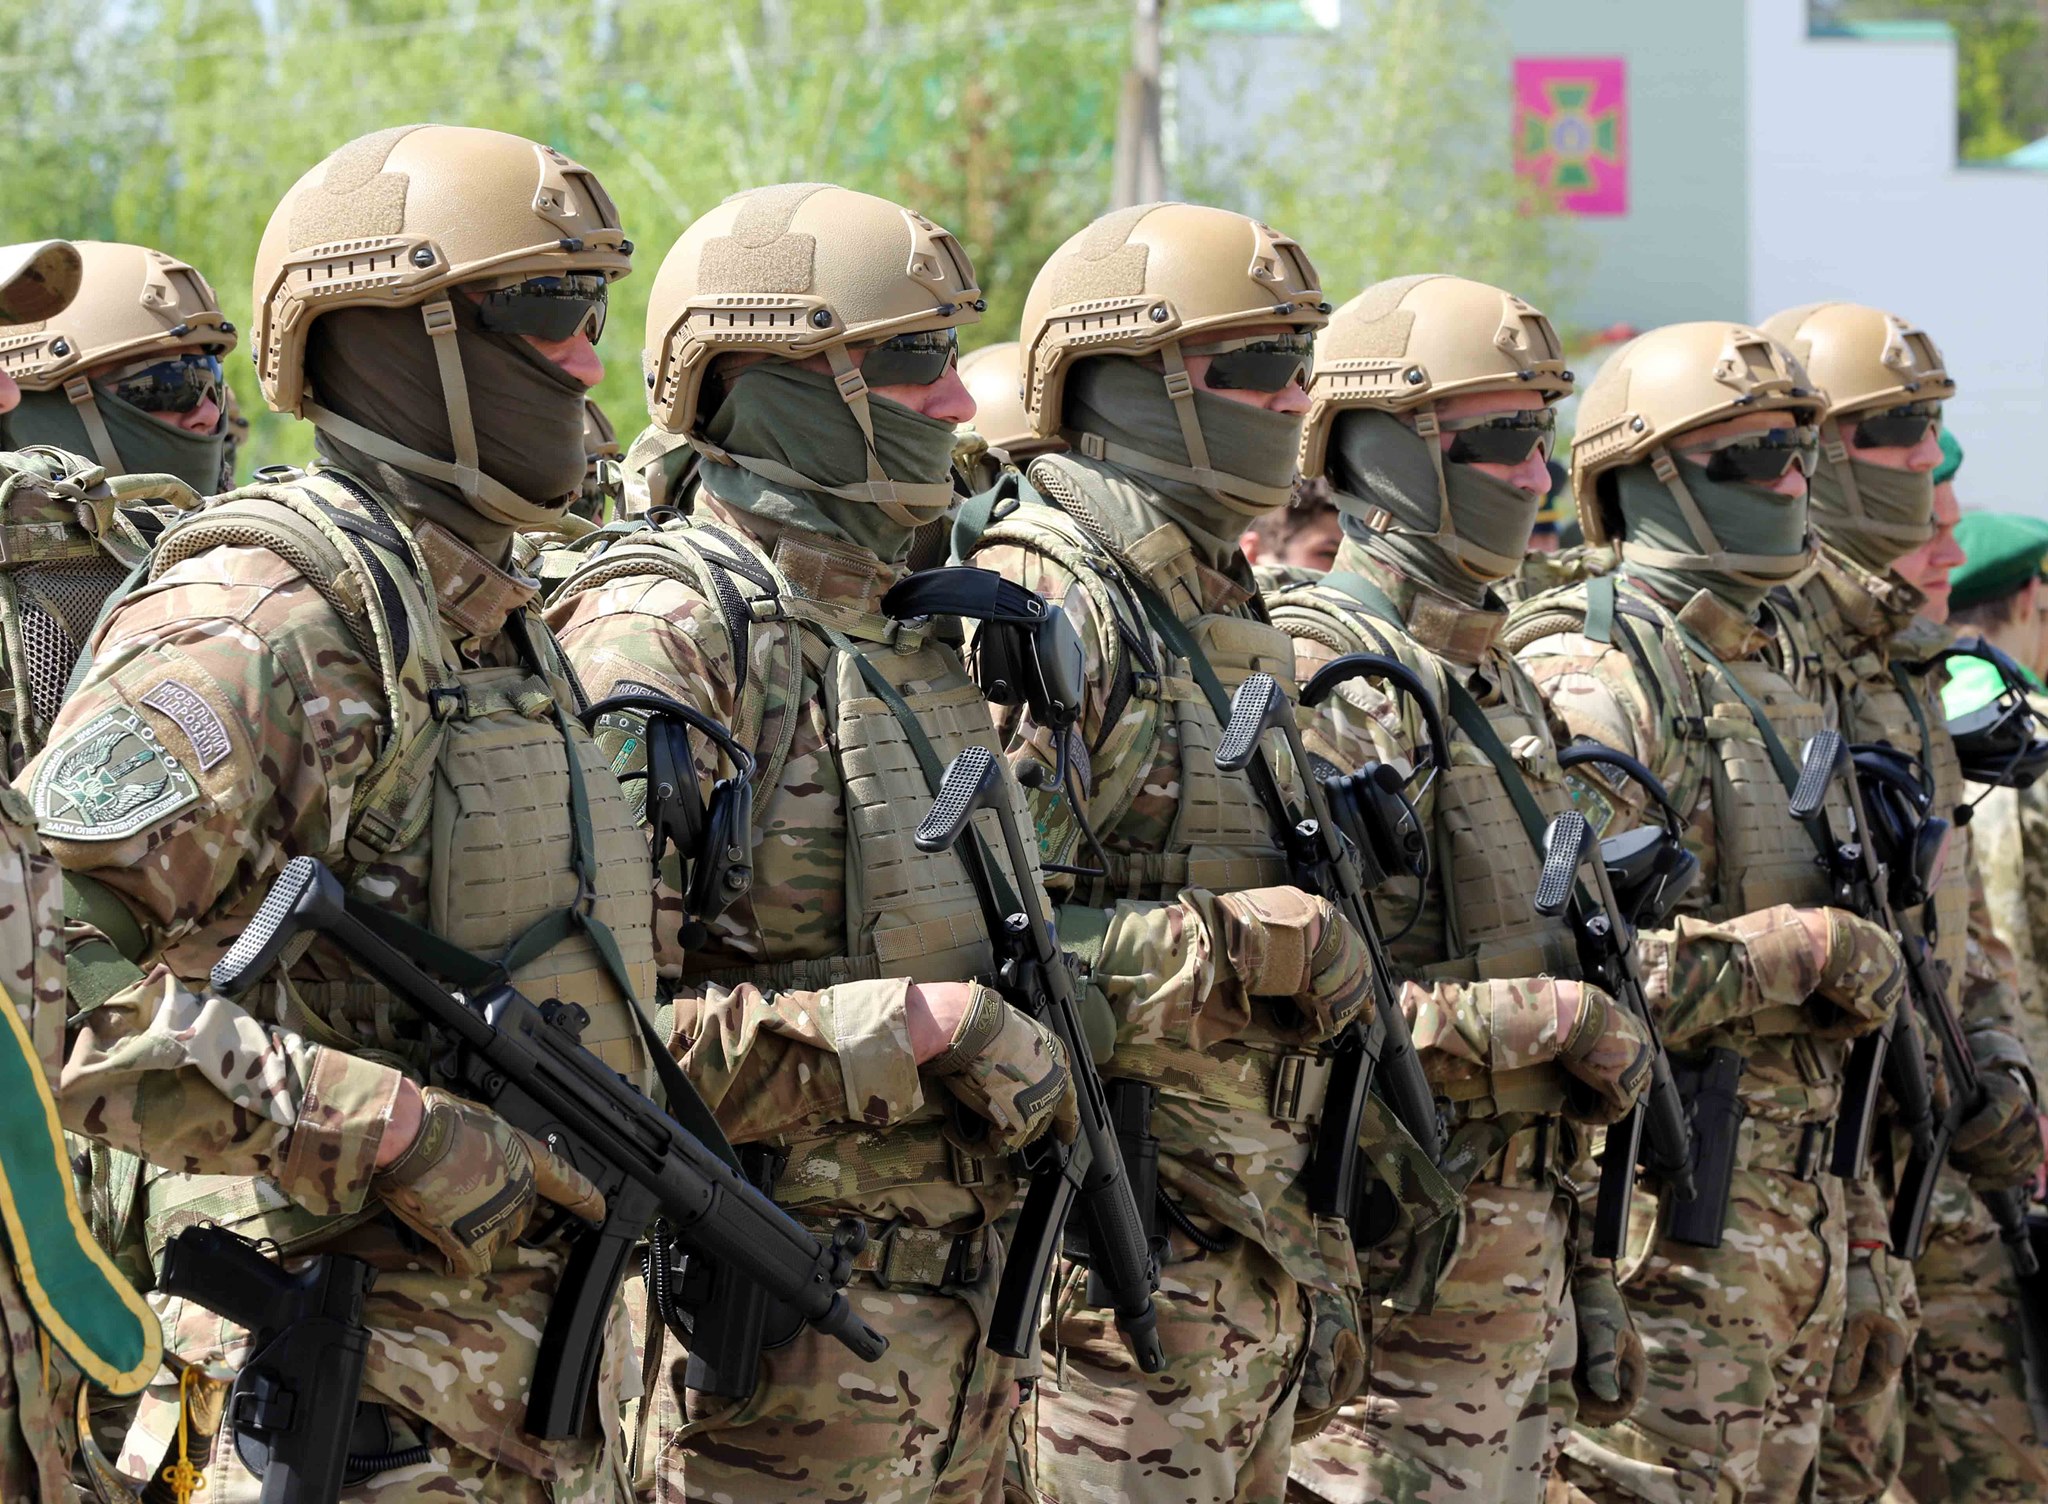 The Guardian розповіла про секретний український батальйон “Братство”, який веде диверсійну роботу в Росії